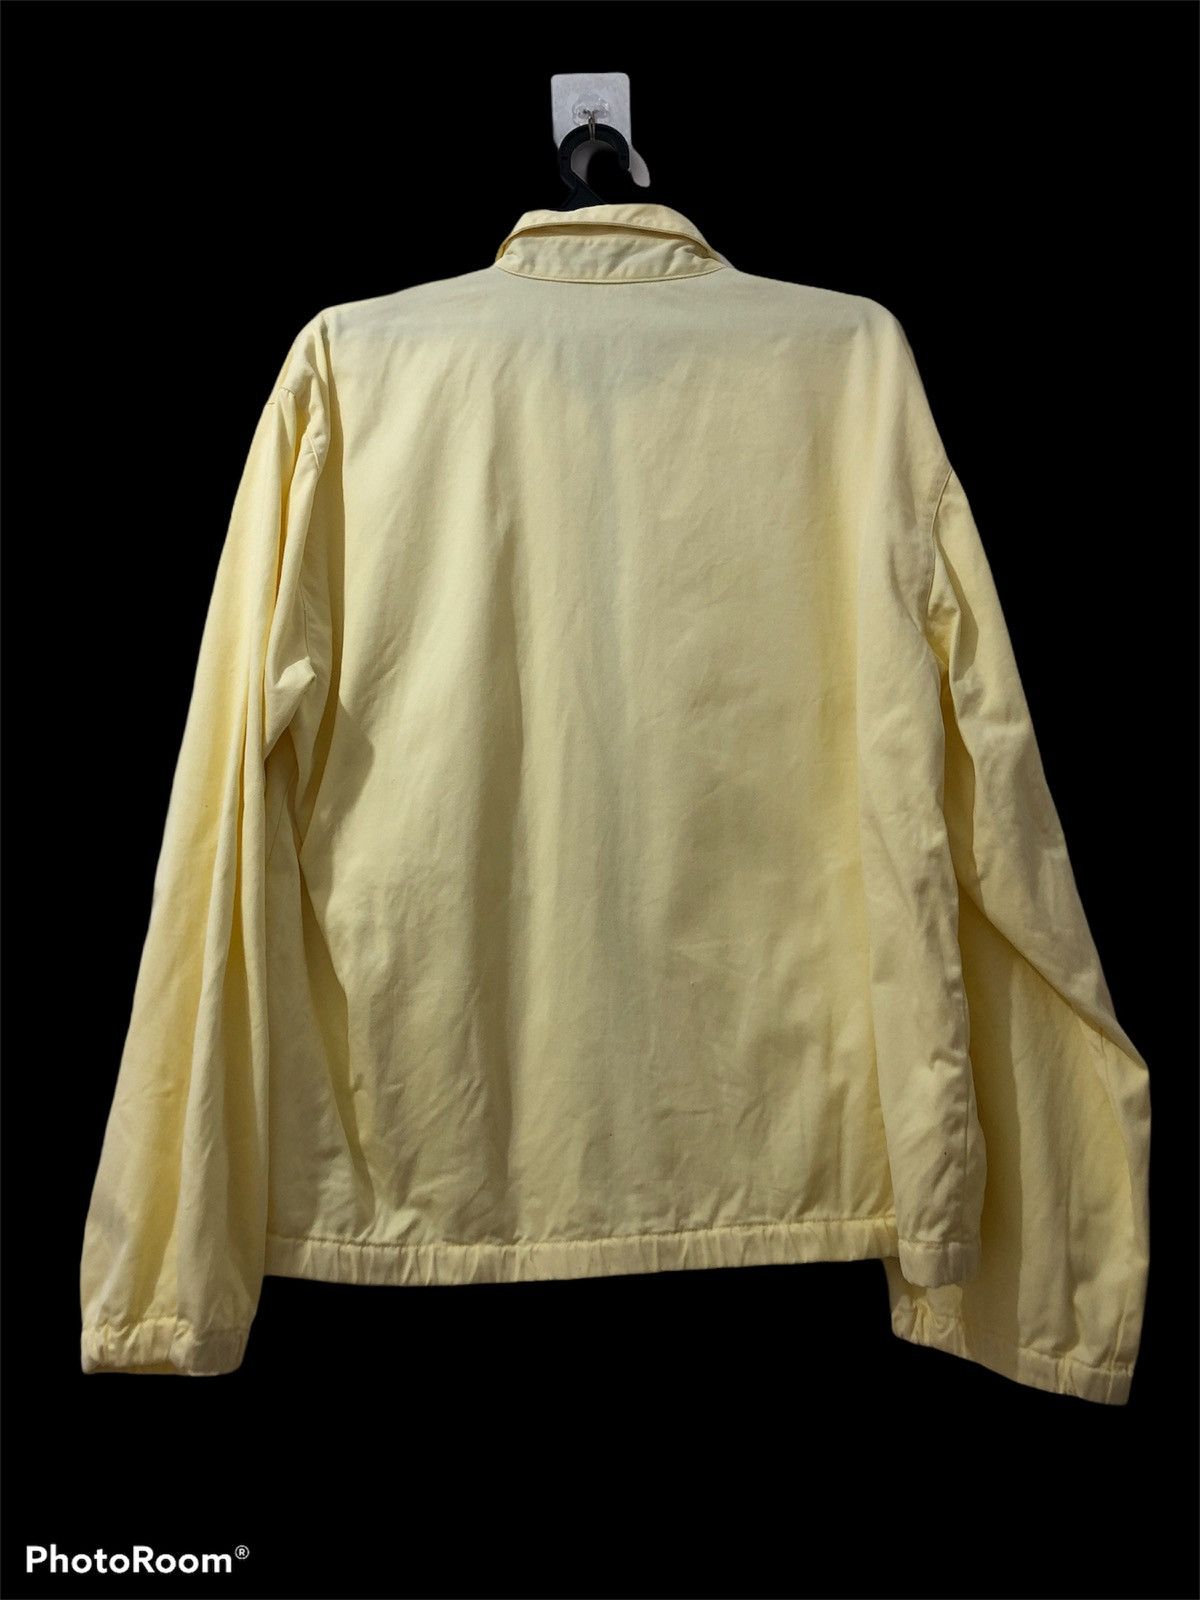 Polo Ralph Lauren - Polo jacket zipper up - 2